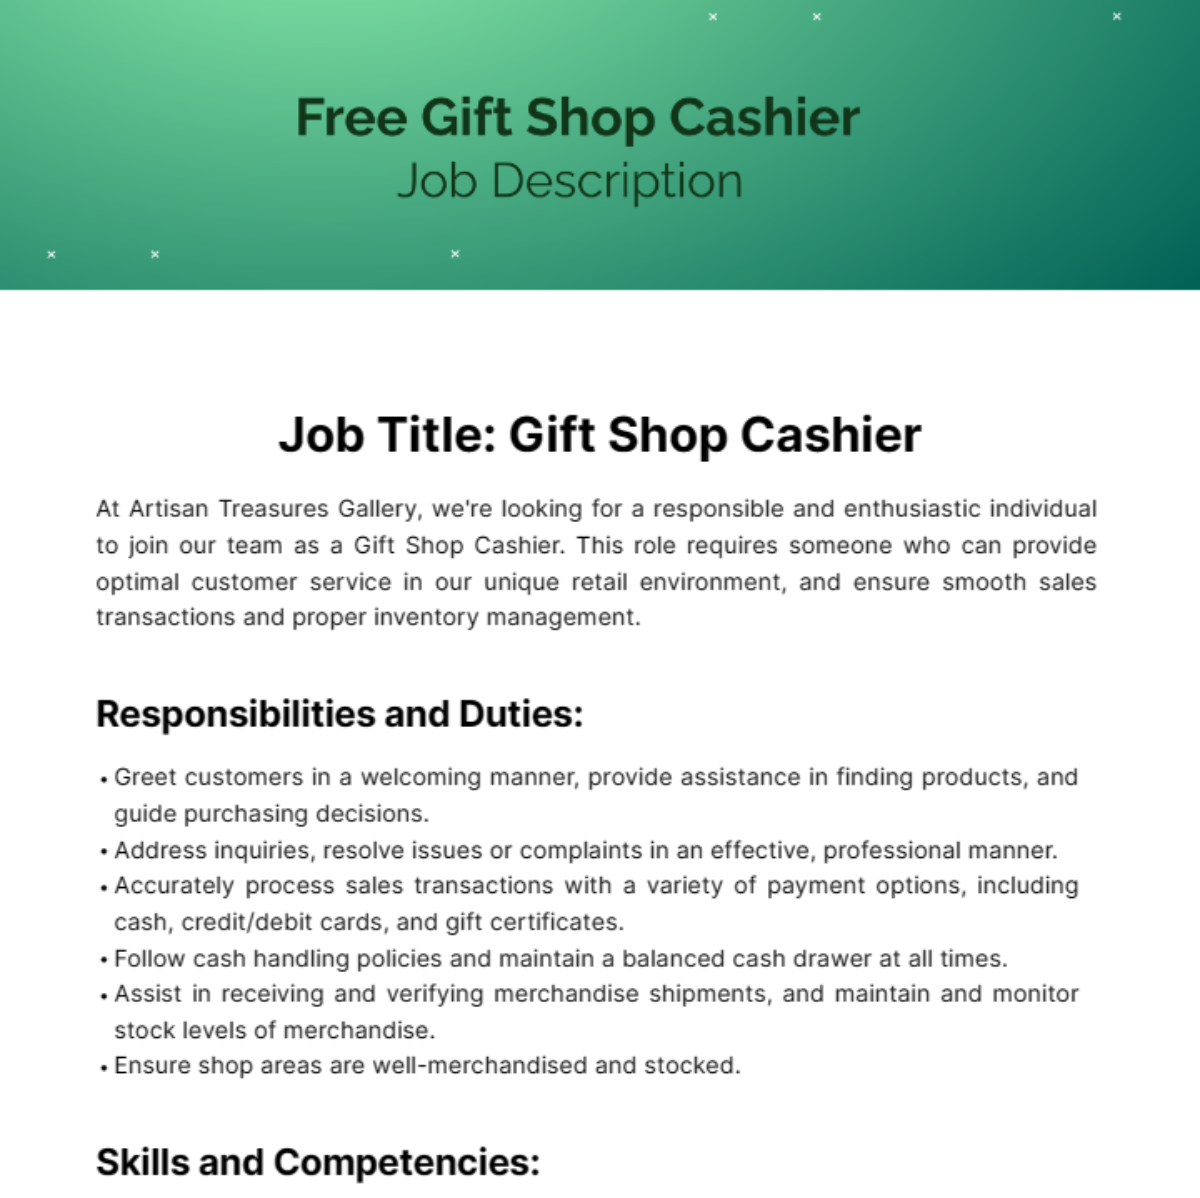 Free Gift Shop Cashier Job Description Template